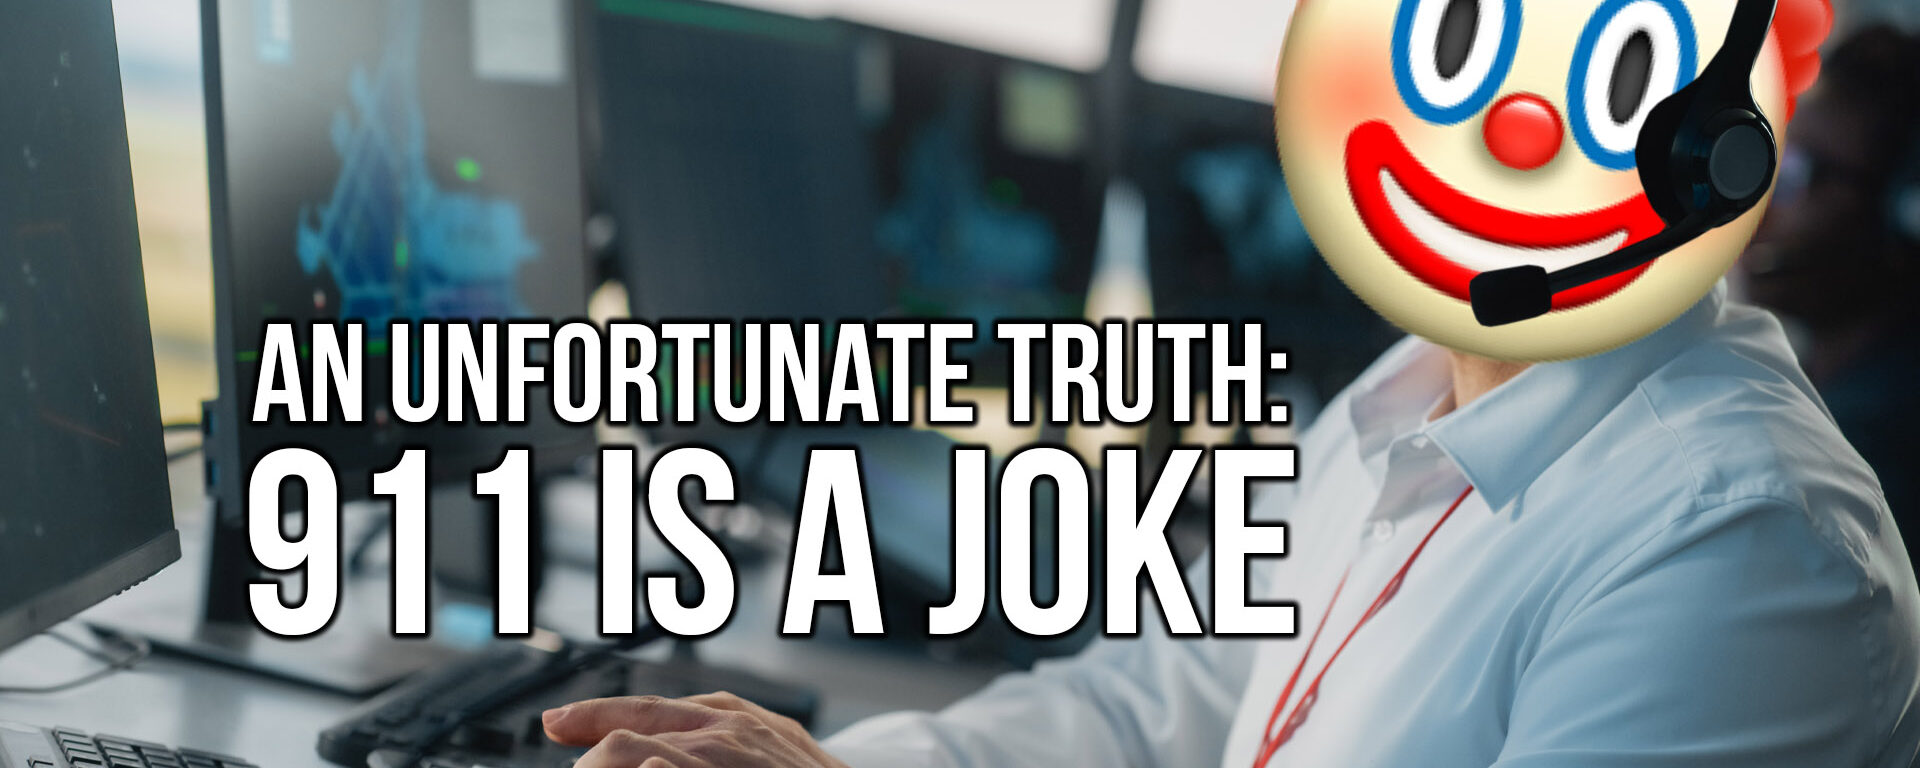 An Unfortunate Truth: 911 Is A Joke | SOTG 1238 Pt. 2